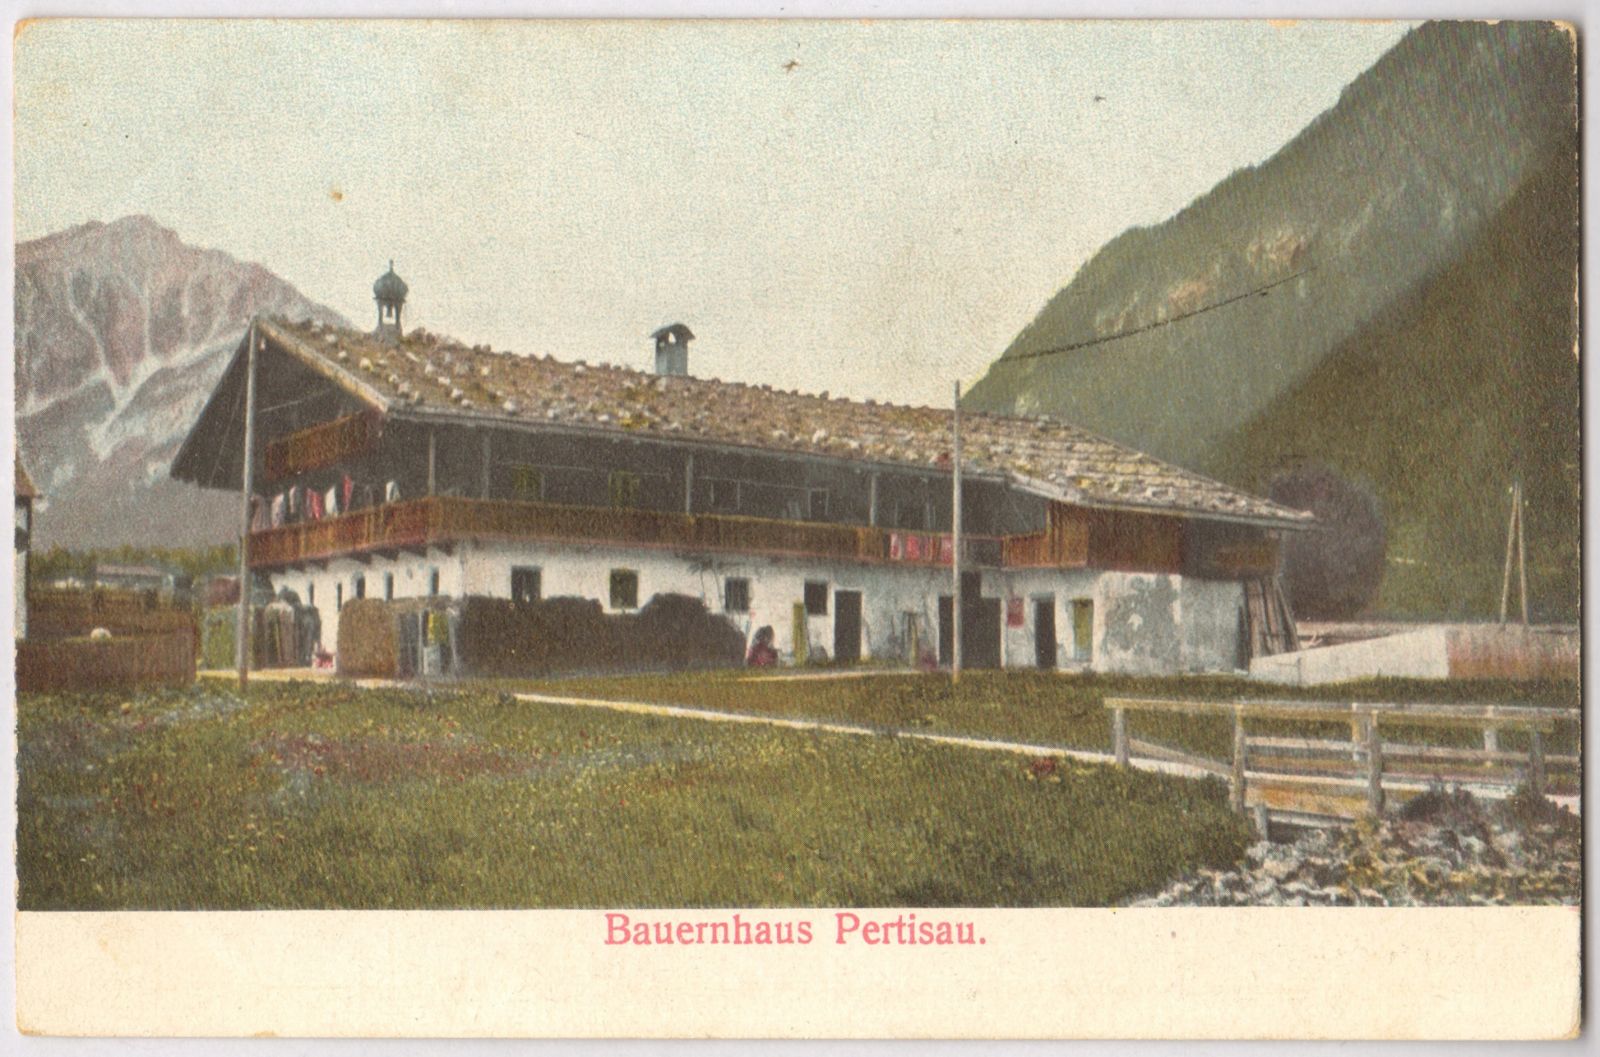 Bauernhaus Pertisau